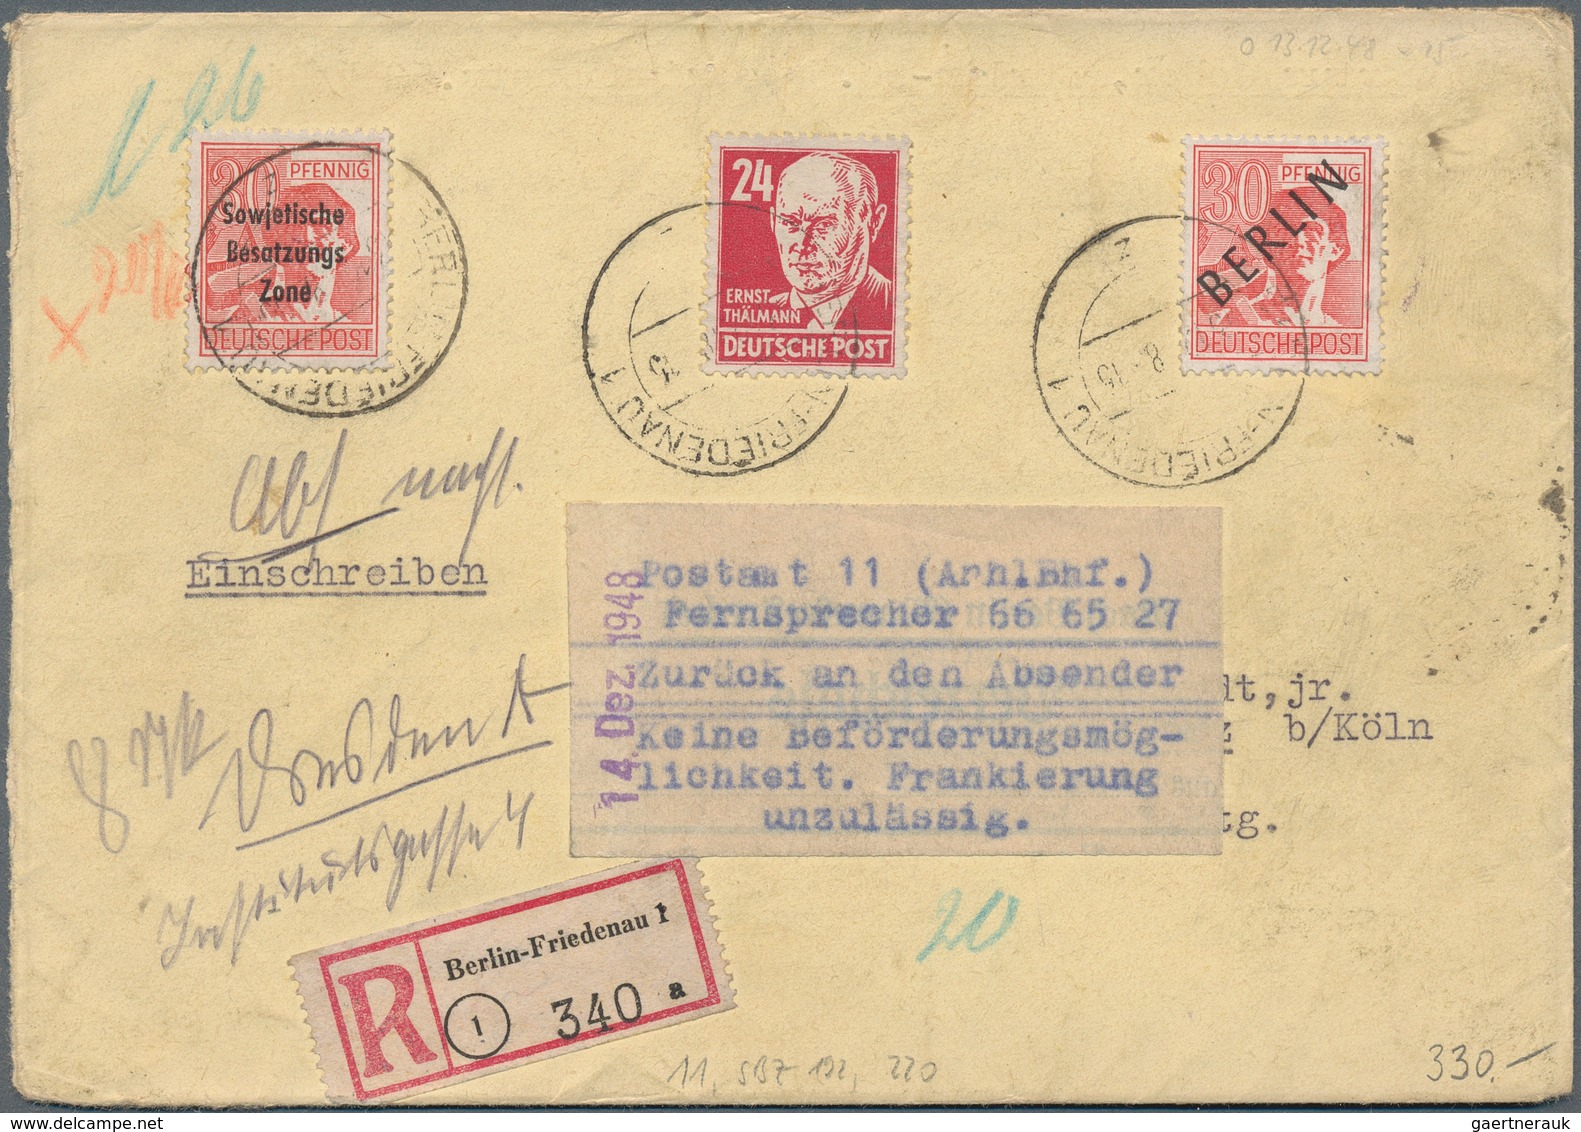 Deutschland nach 1945: 1945-1982, Besonderheiten, Partie mit rund 250 Briefen und Belegen, dabei Nac